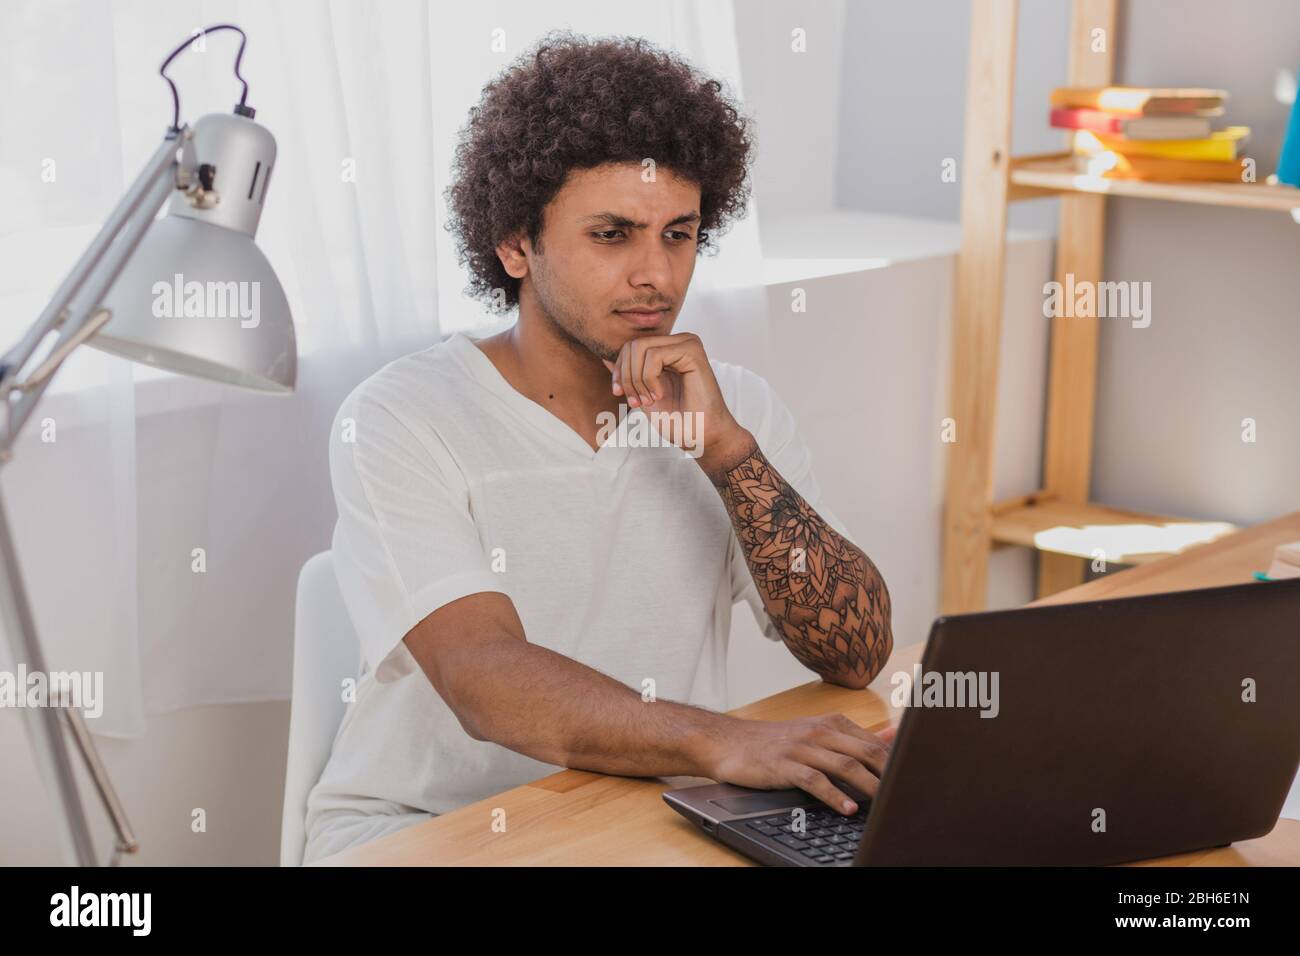 Giovane uomo, un mulatto con capelli ricci, concentrato guardando il laptop mentre si siede al suo posto di lavoro a casa Foto Stock